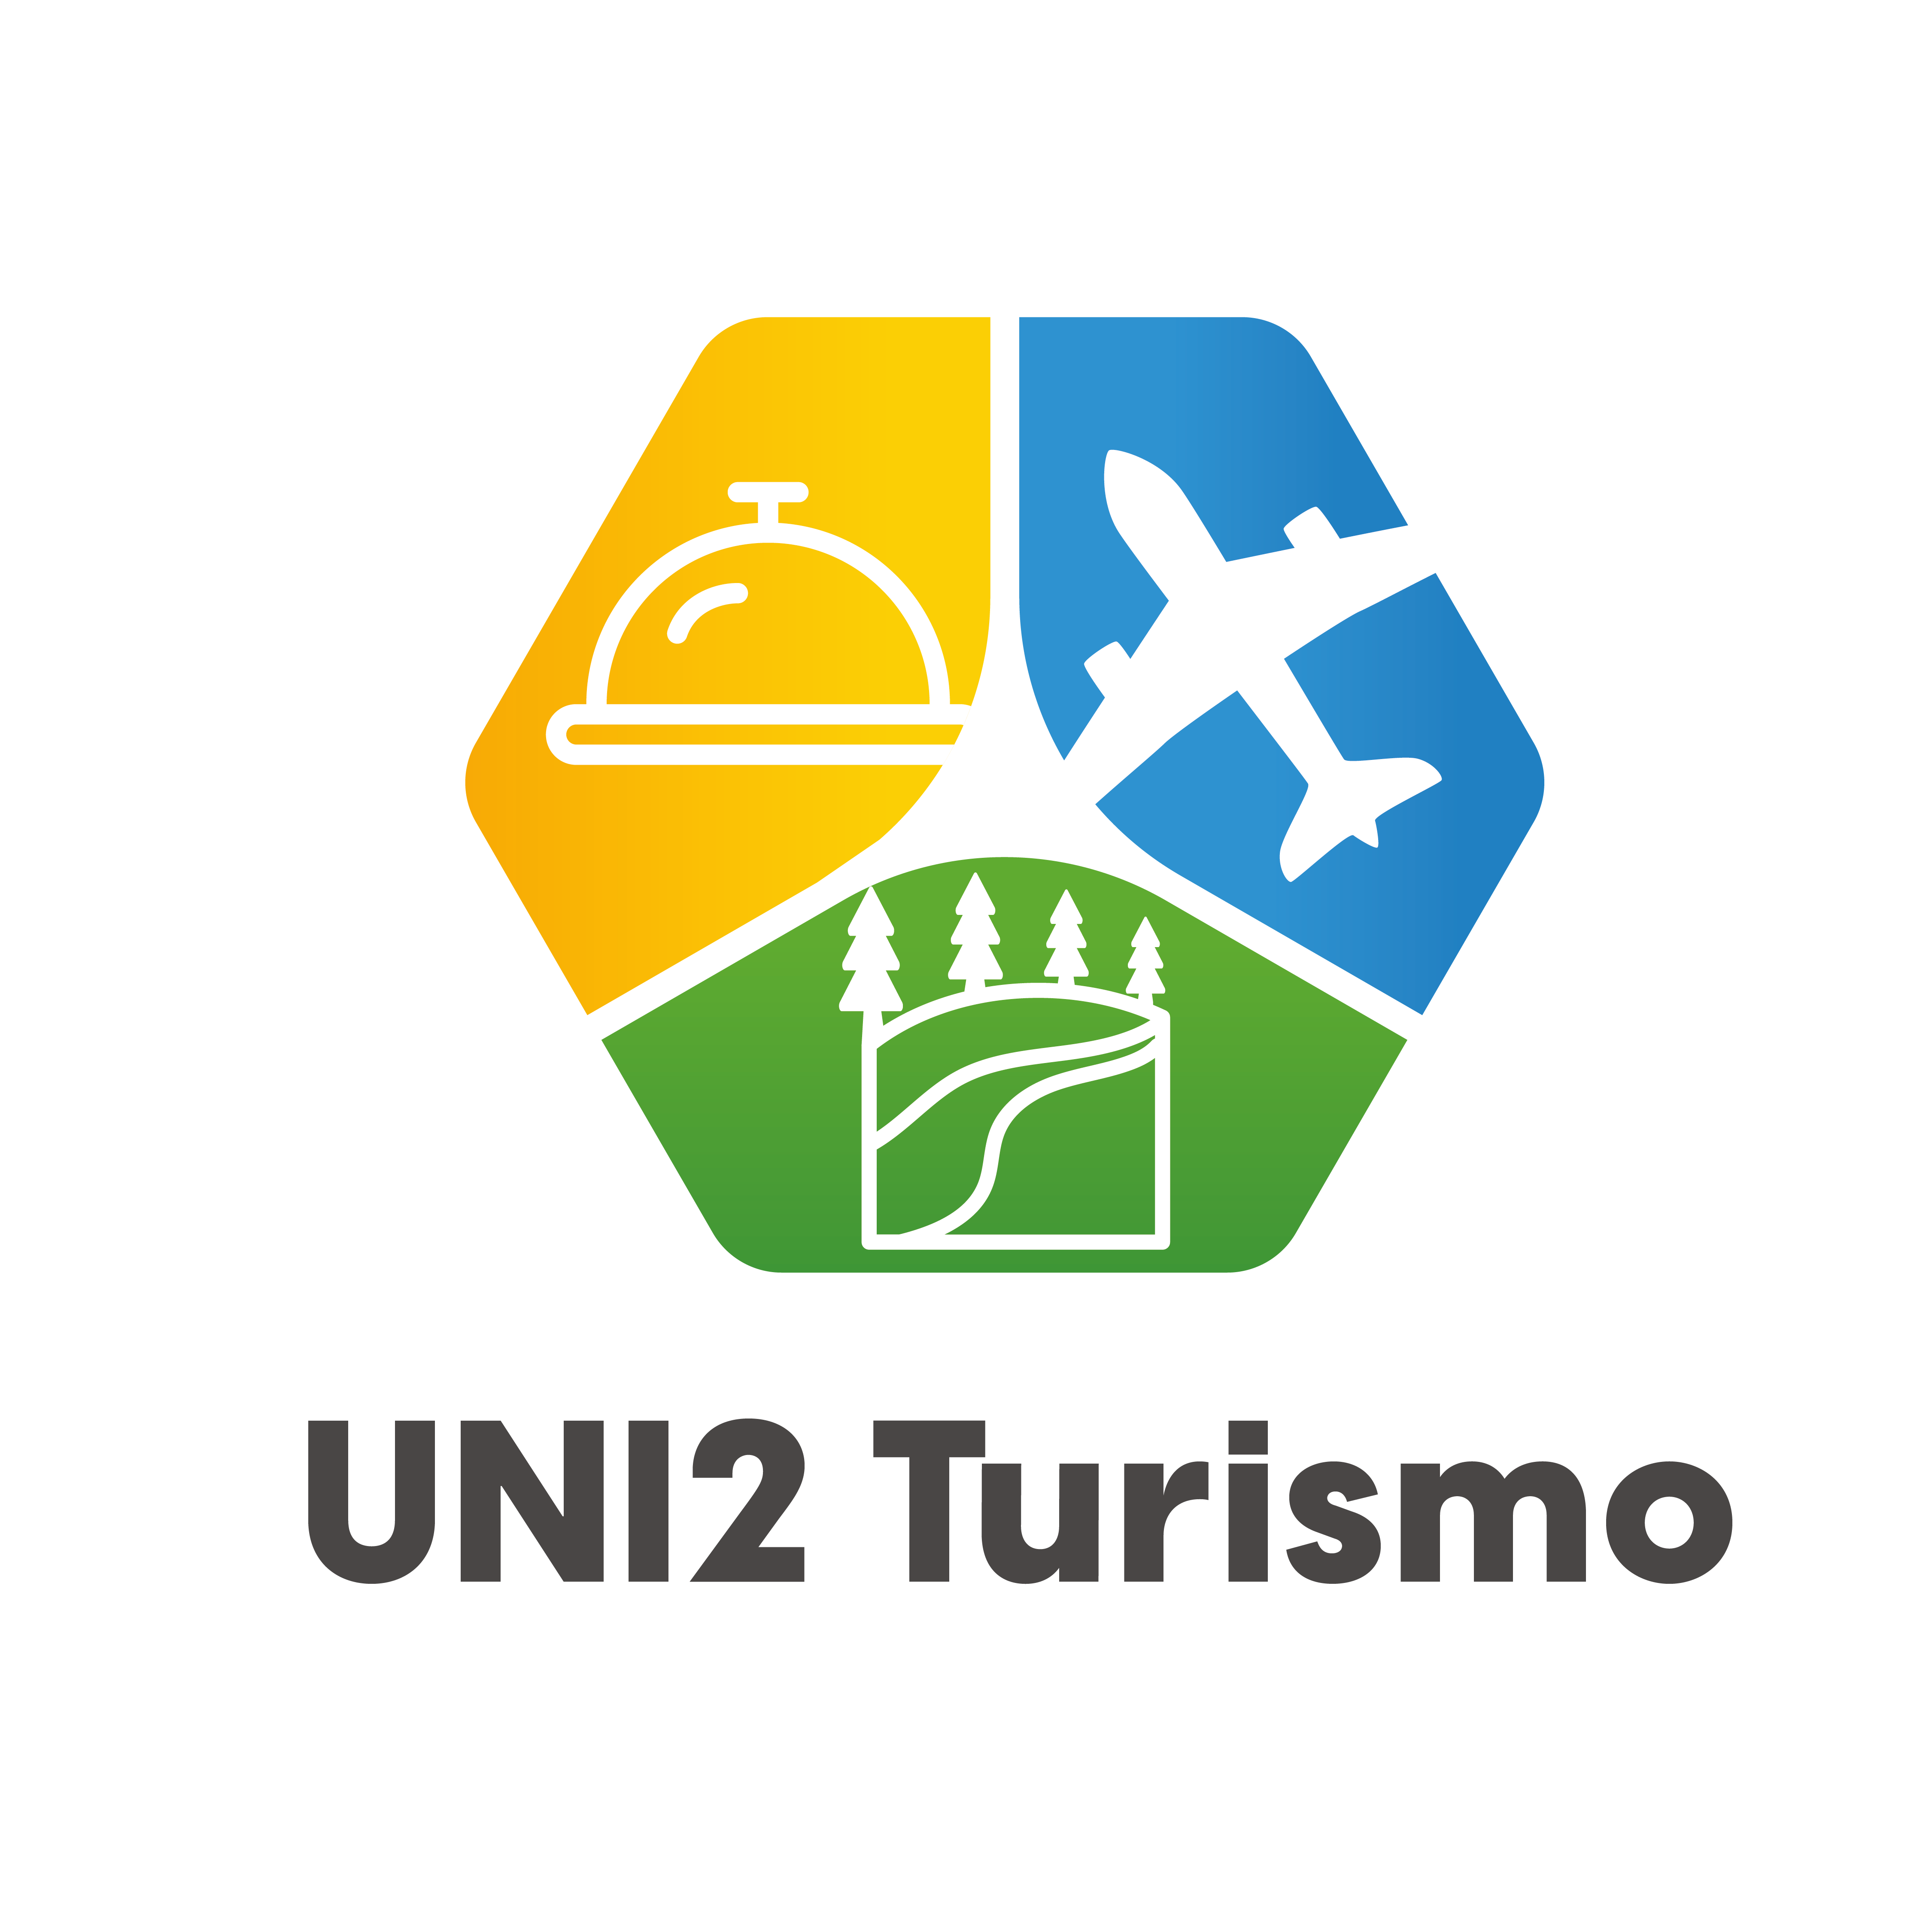 UNI2 Turismo